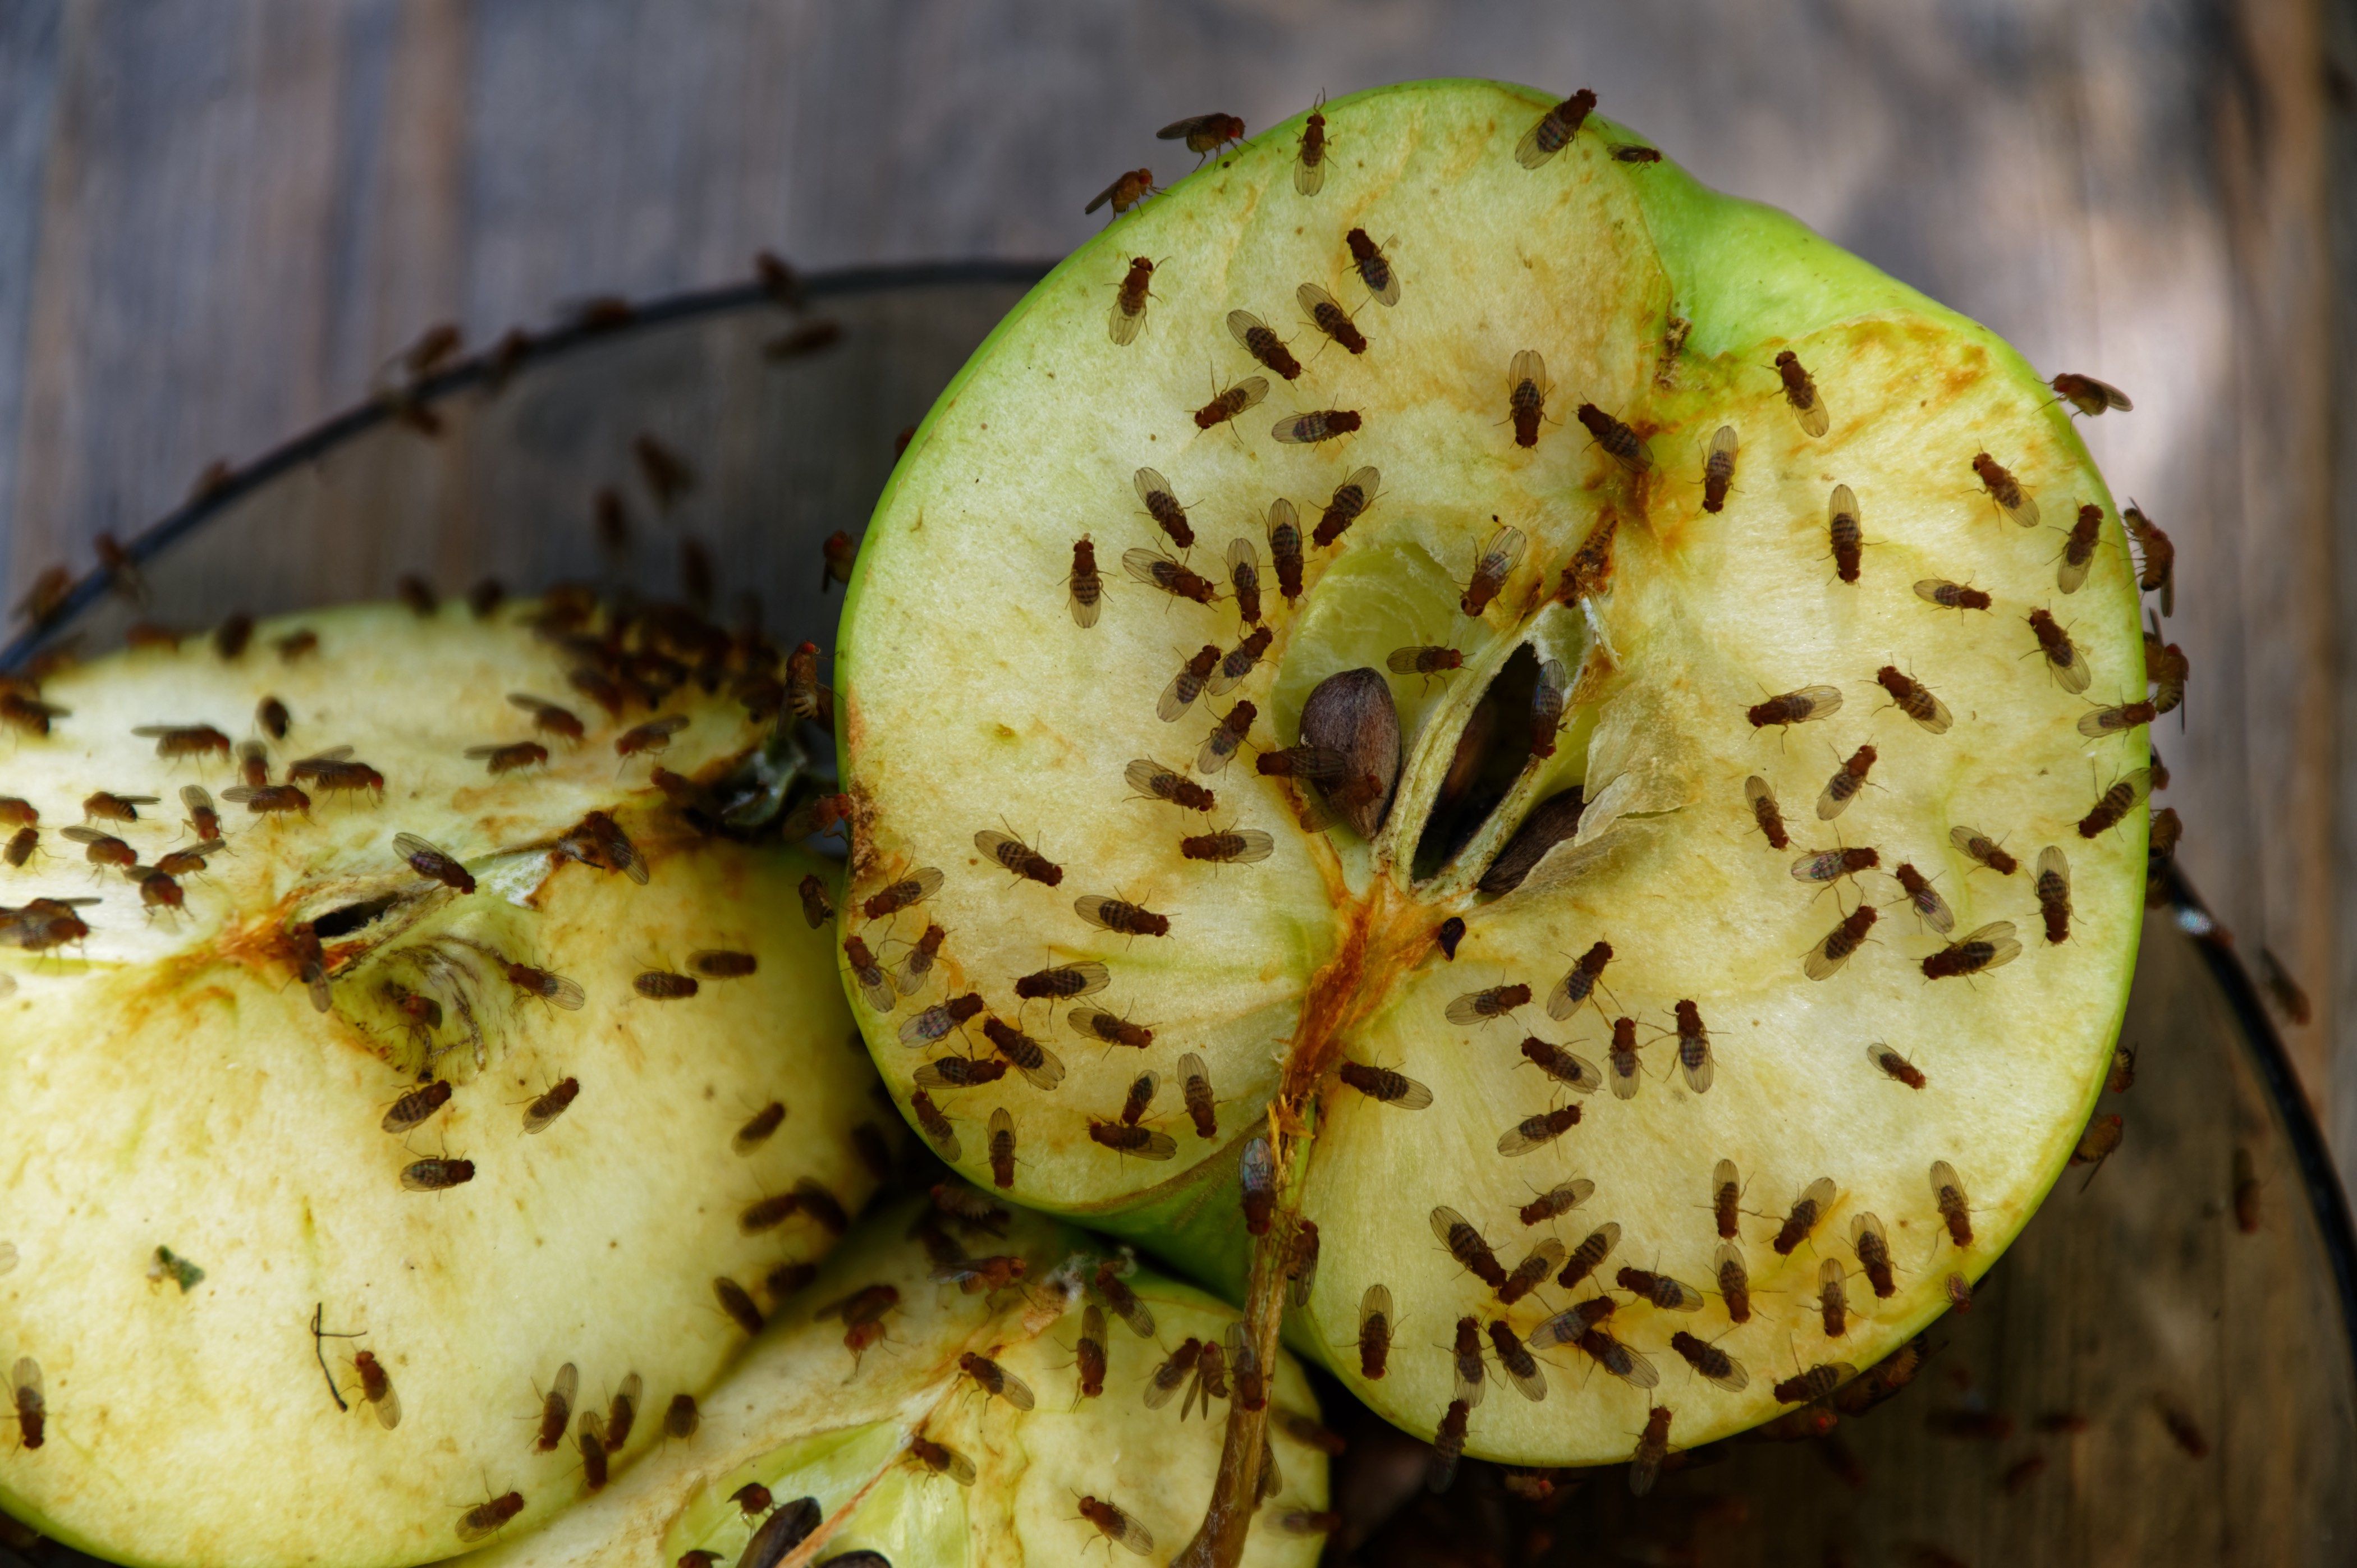 Comment se débarrasser des mouches à fruits?